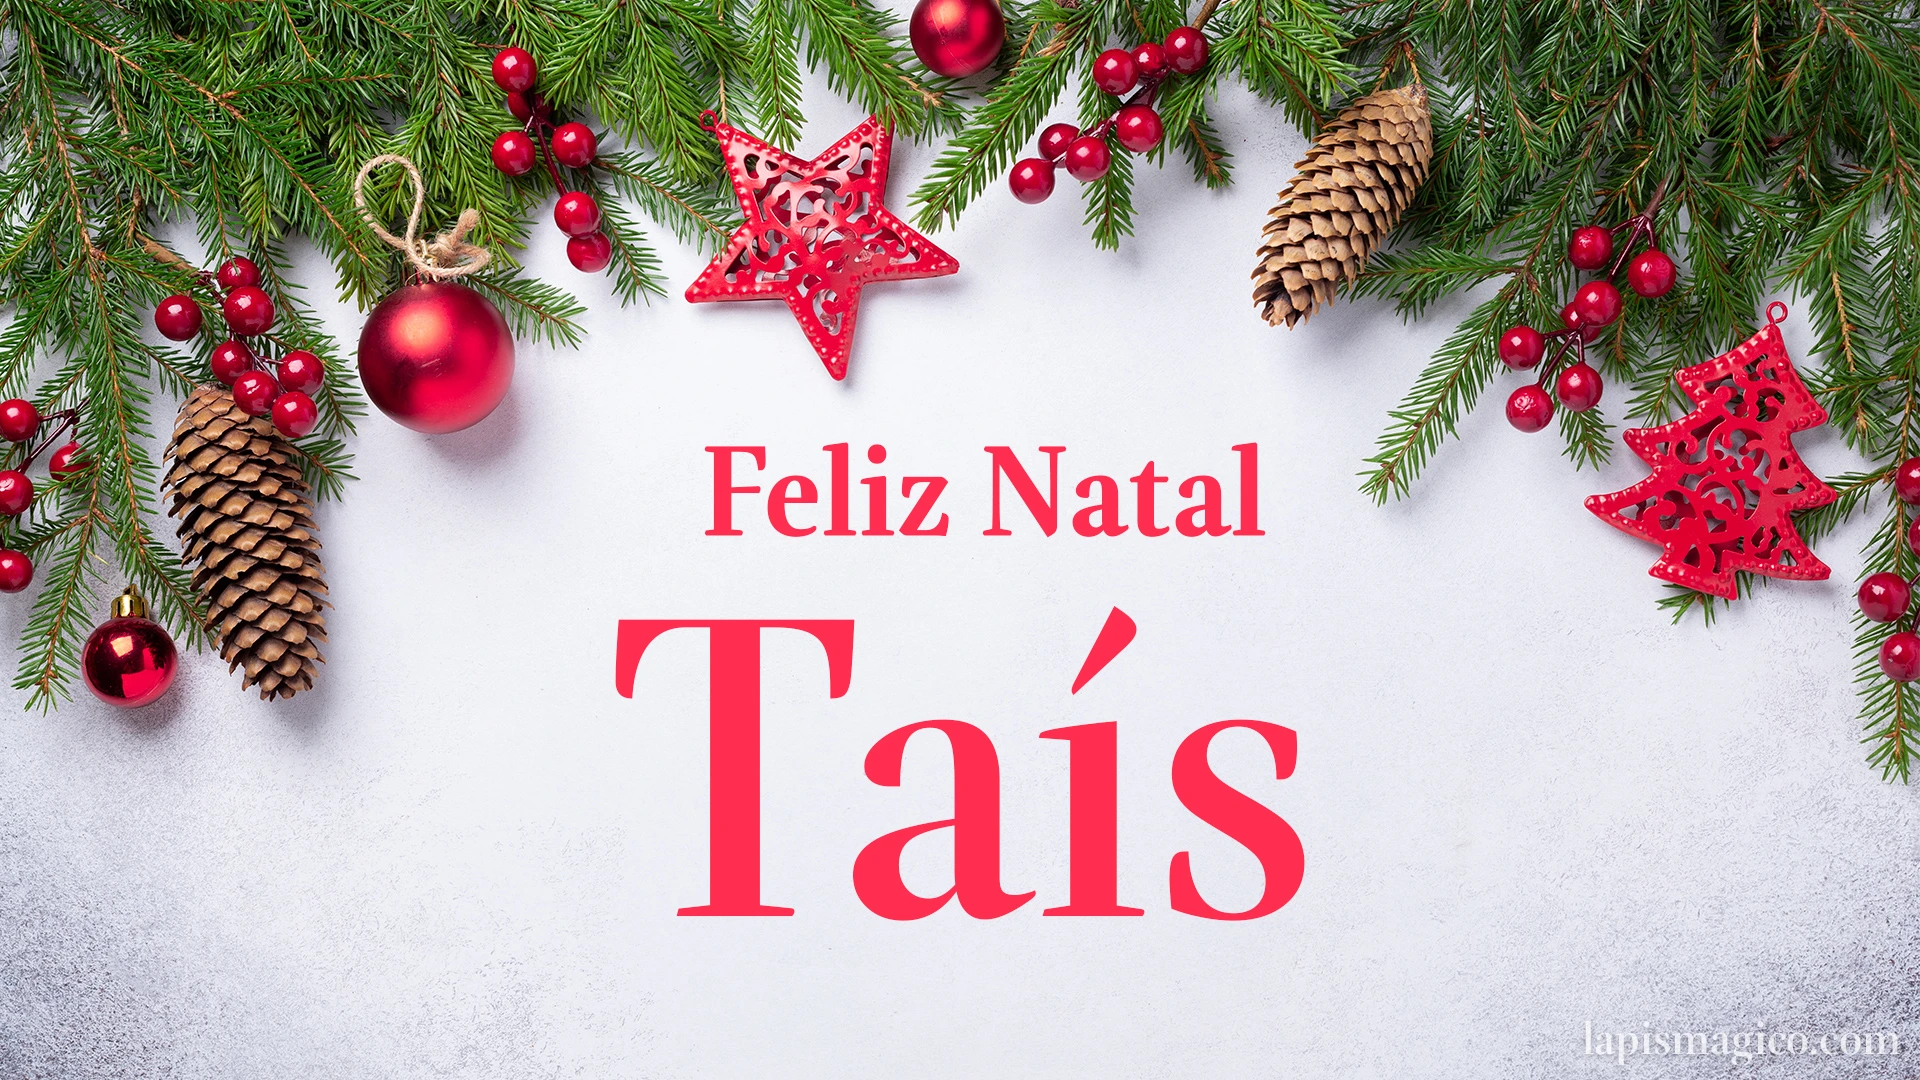 Oh Taís, cinco postais de Feliz Natal Postal com o teu nome